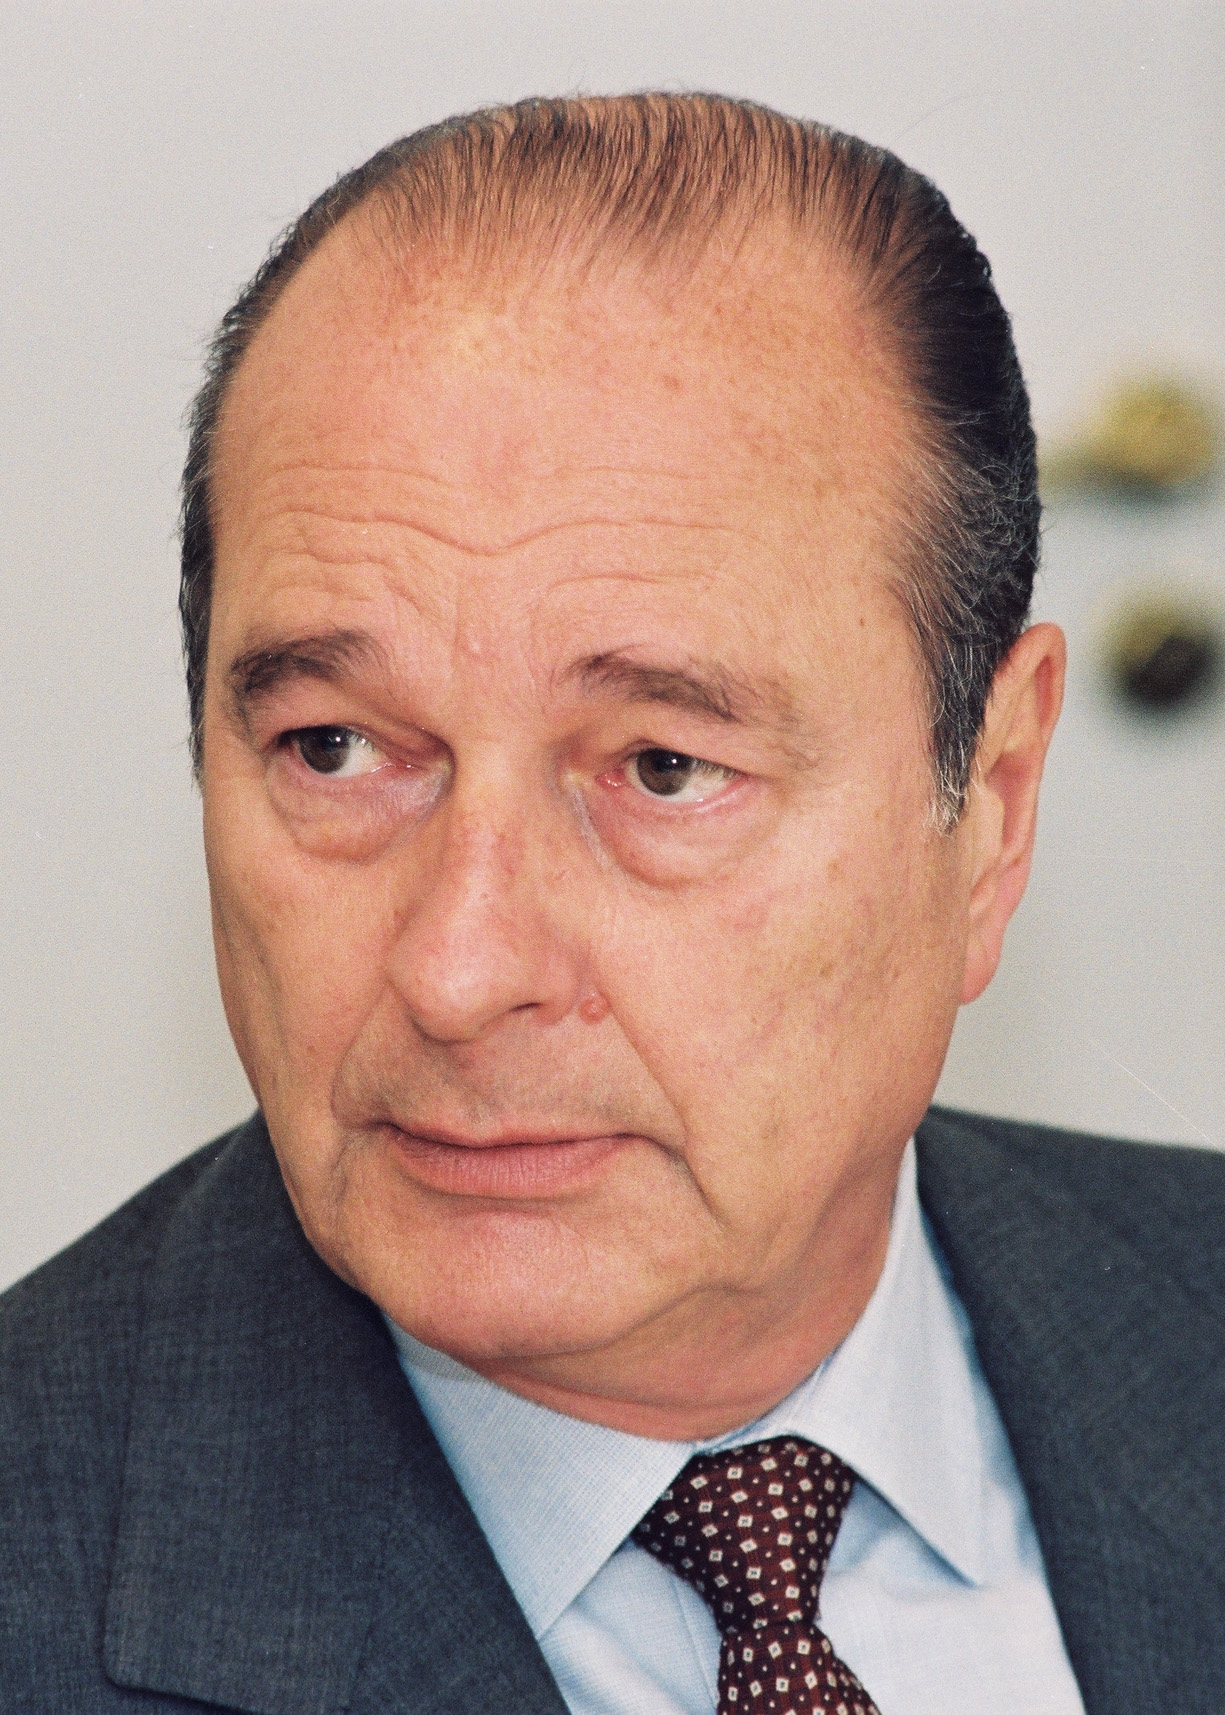 auteur Jacques Chirac de la citation Problème de vision isolé et limité.